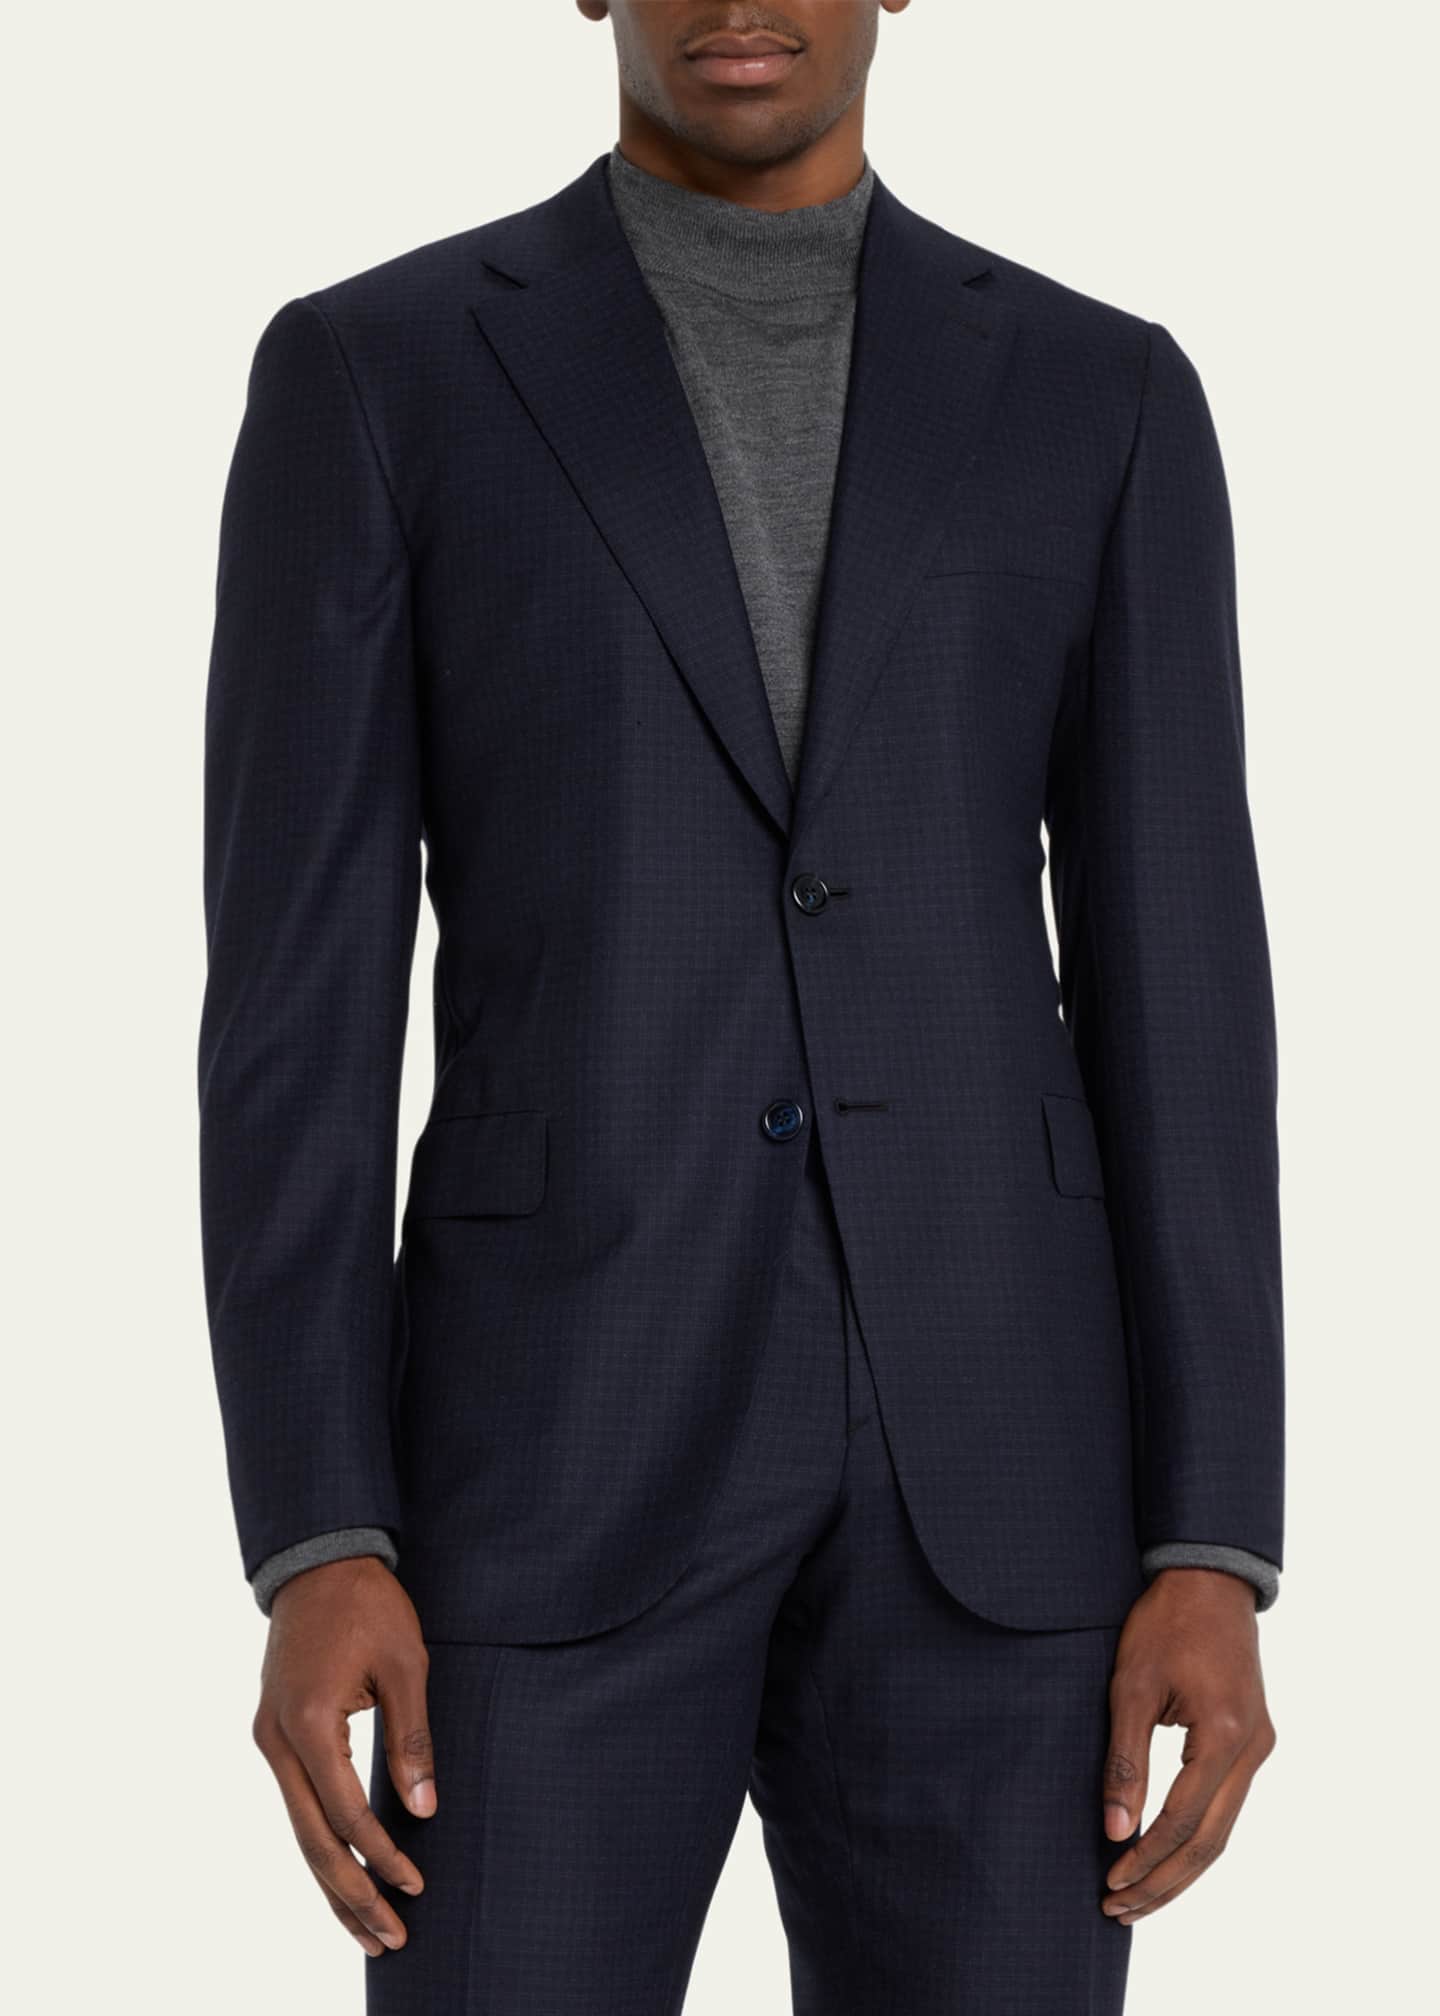 Brioni Men's Brun Wool Micro Check Suit